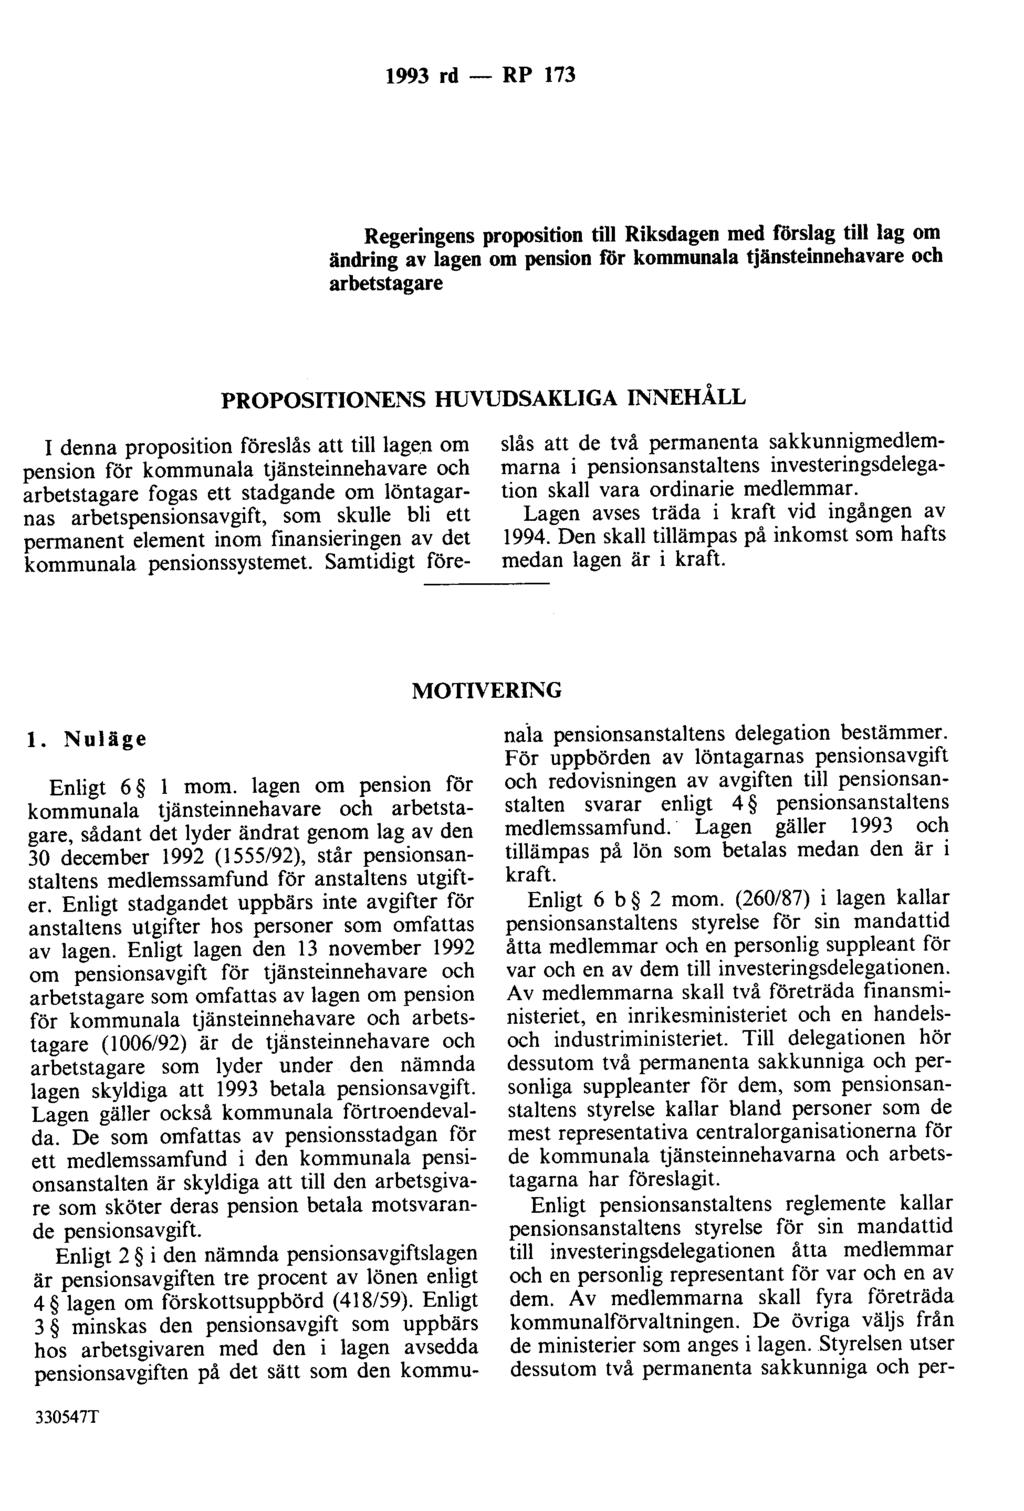 1993 rd - RP 173 Regeringens proposition till Riksdagen med förslag till lag om ändring av lagen om pension för kommunala tjänsteinnehavare och arbetstagare PROPOSITIONENS HUVUDSAKLIGA INNEHÅLL I